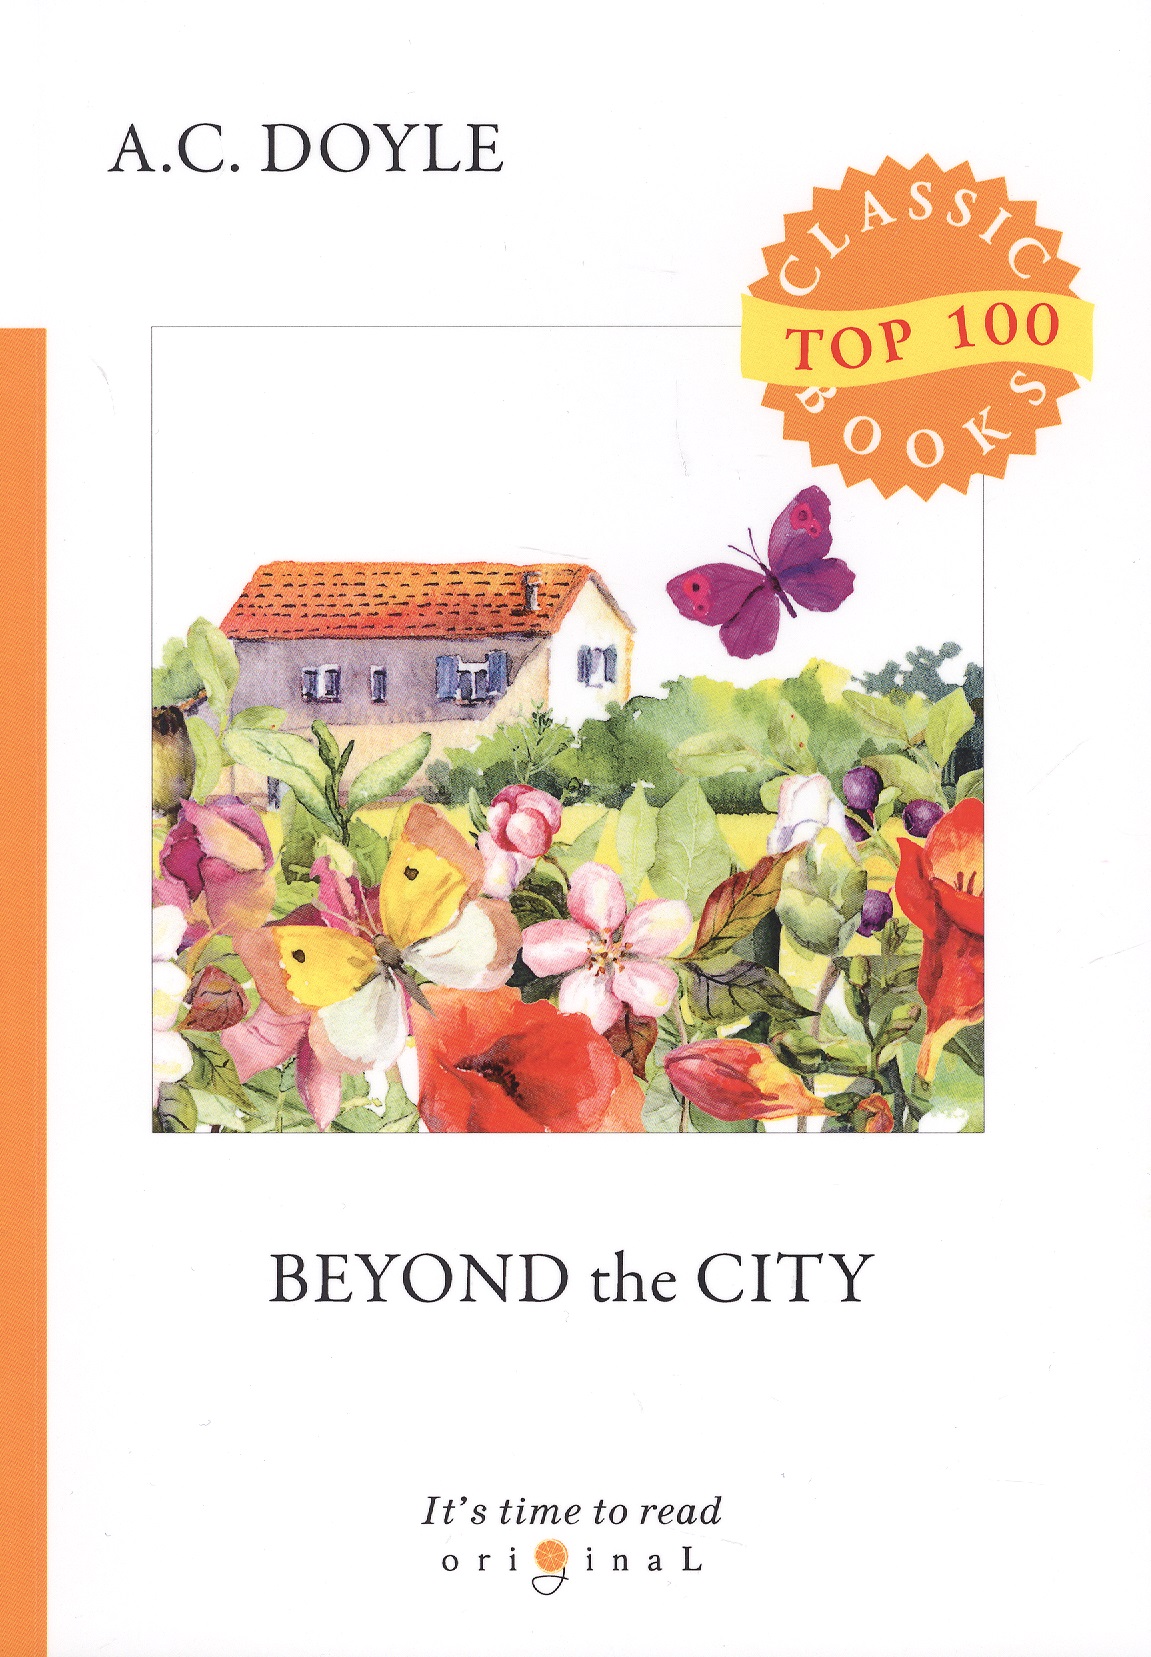 Дойл Артур Конан Beyond the City = Приключения в загородном доме: на англ.яз цена и фото